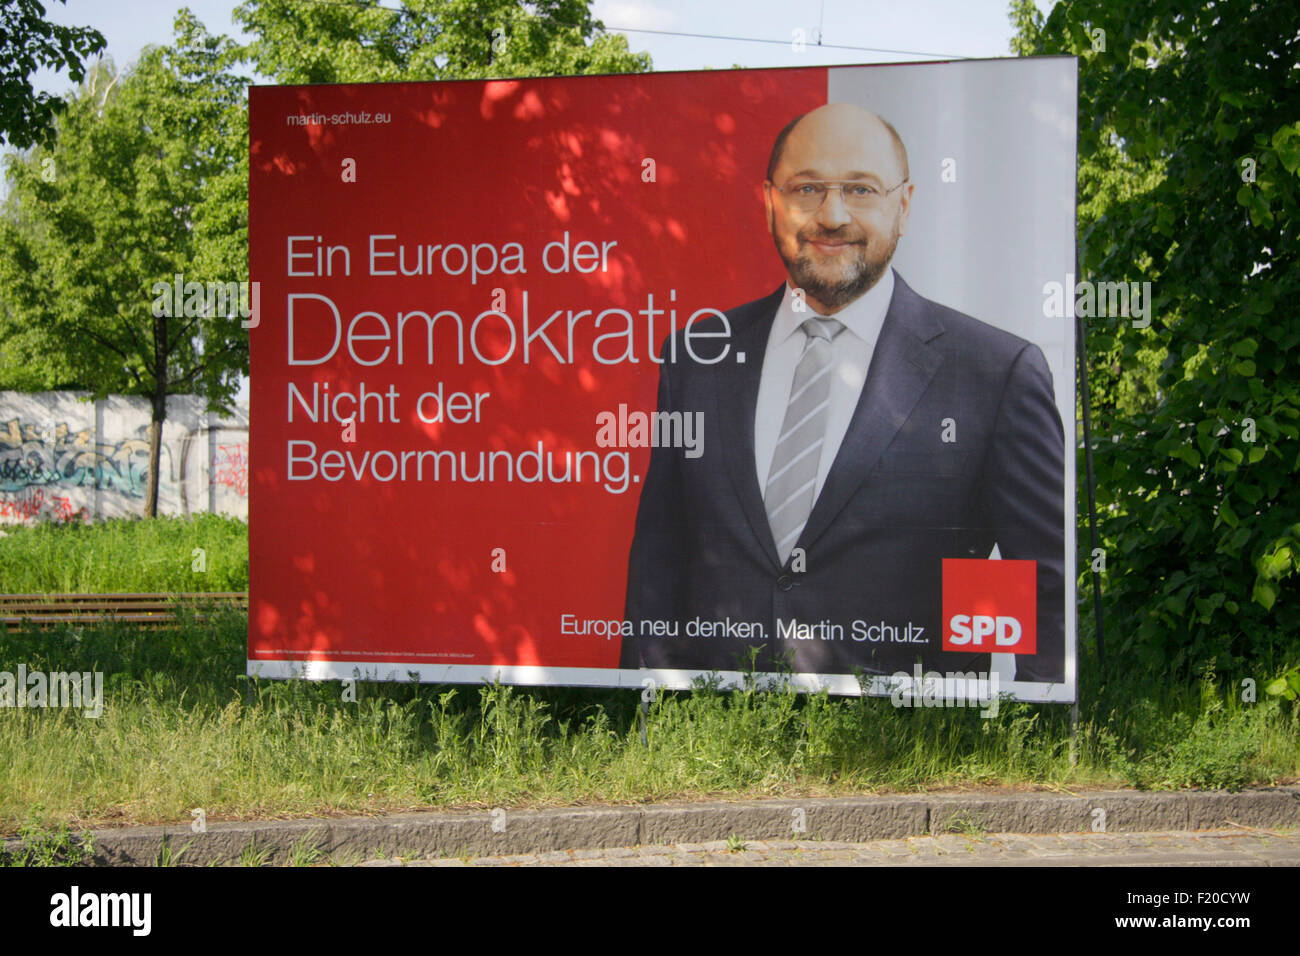 Martin Schulz, SPD  - Wahlplakate zur anstehenden Europawahl, Berlin. Stock Photo